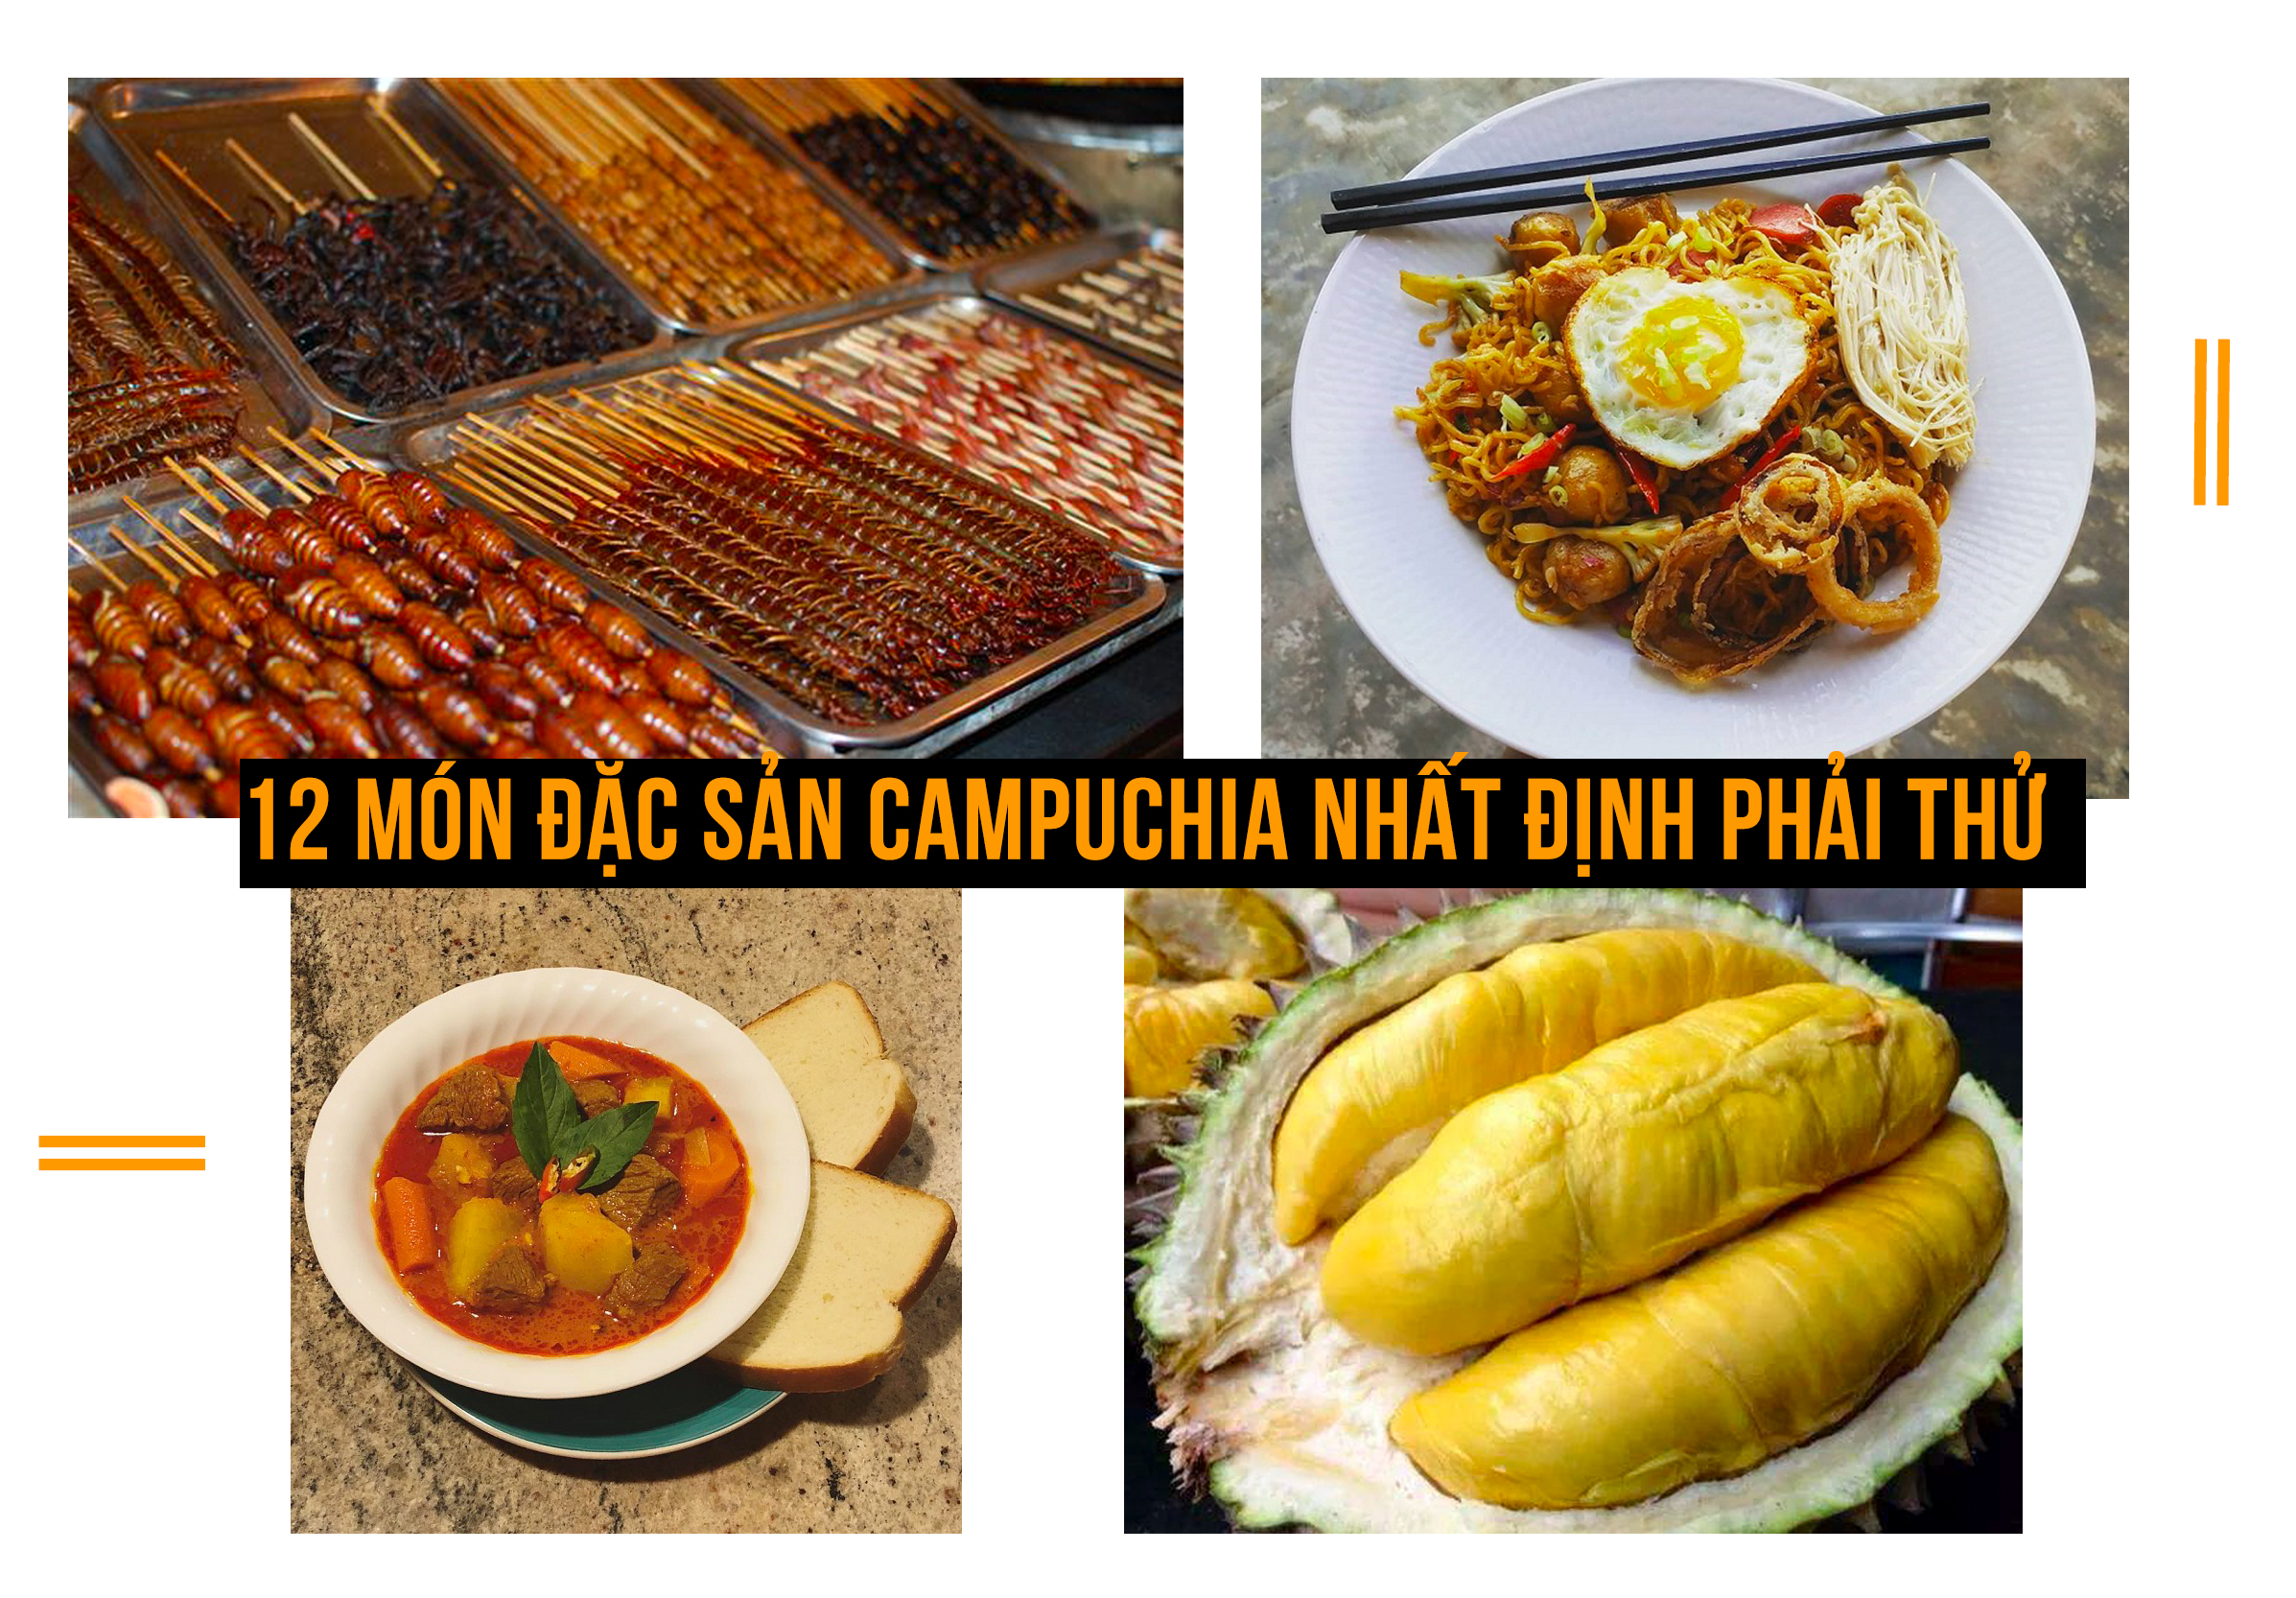 12 món đặc sản Campuchia lạ miệng - ngon mắt - nhất định phải thử